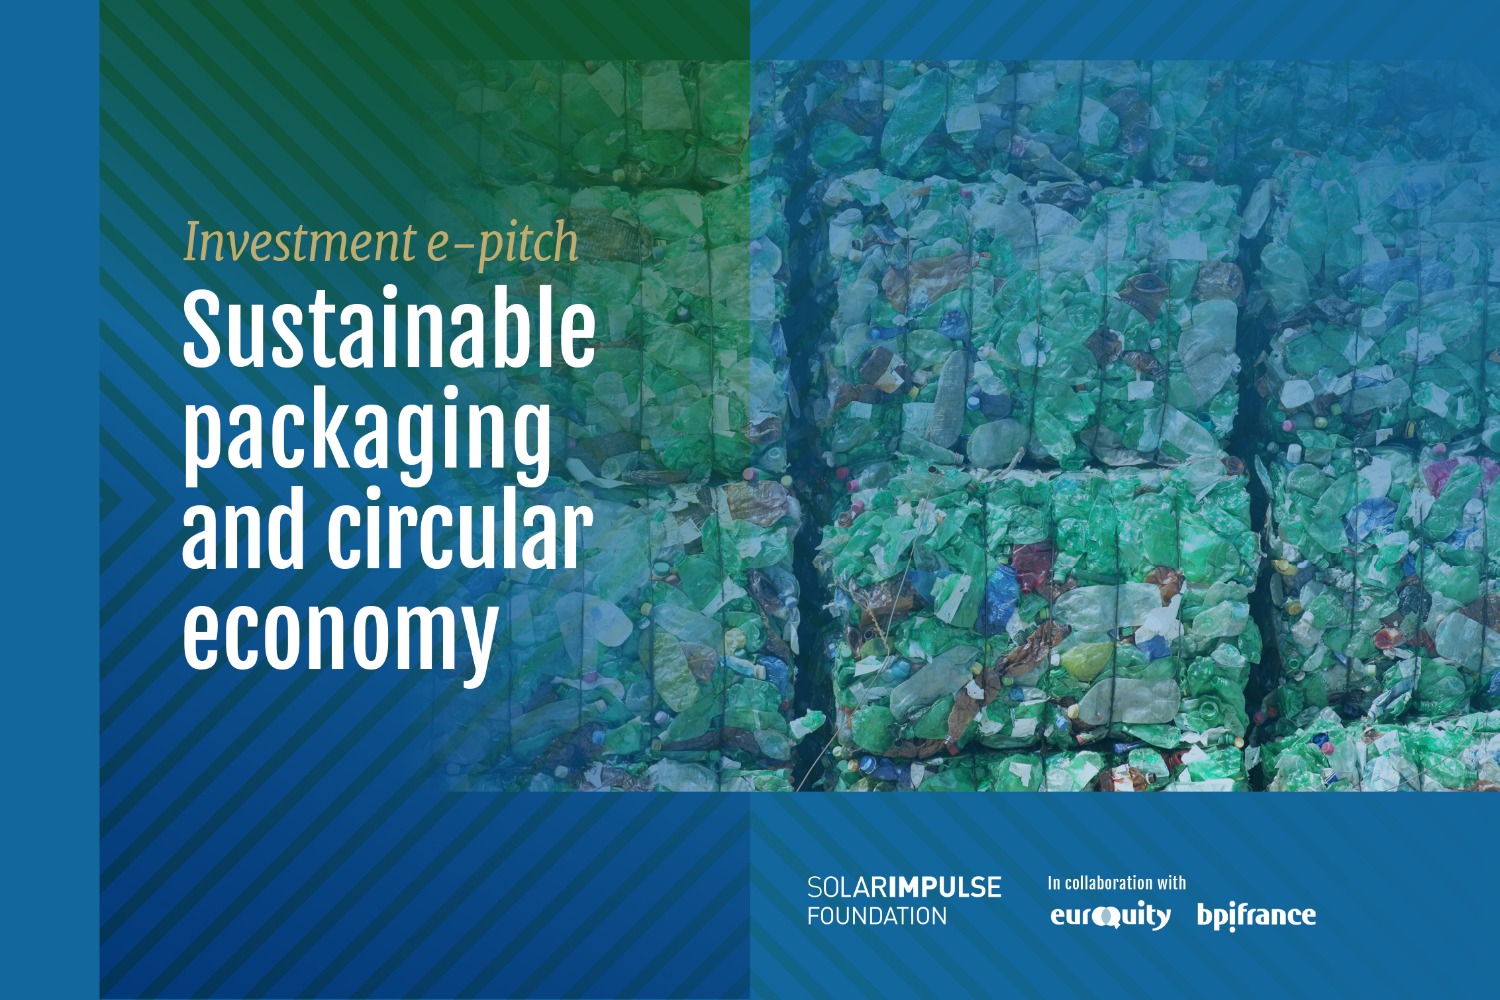 E-Pitch Solar Impulse Investment - " Emballage durable et économie circulaire ". 